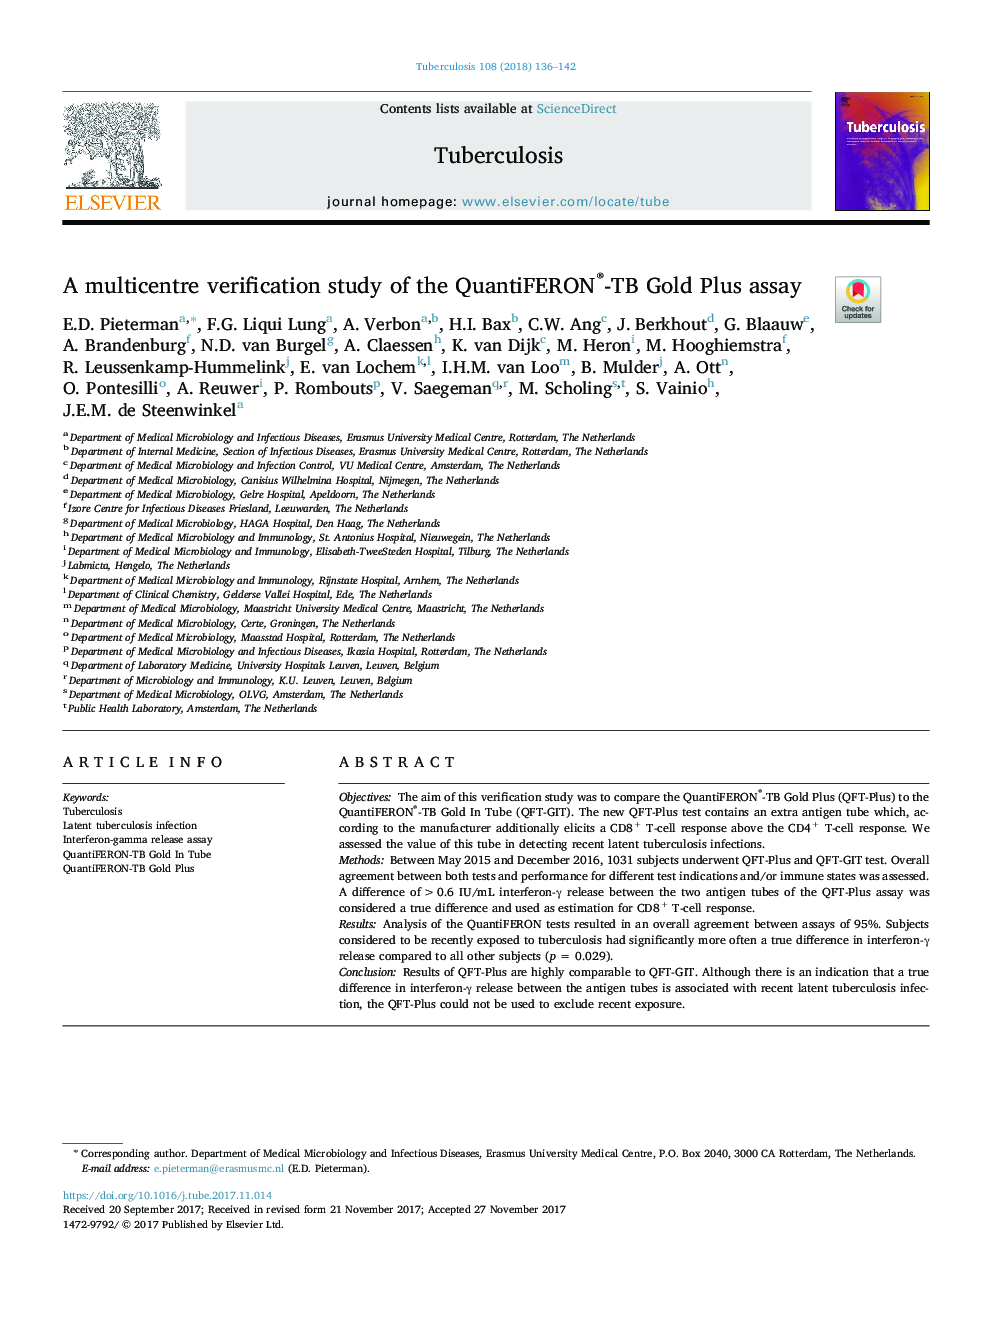 A multicentre verification study of the QuantiFERON®-TB Gold Plus assay